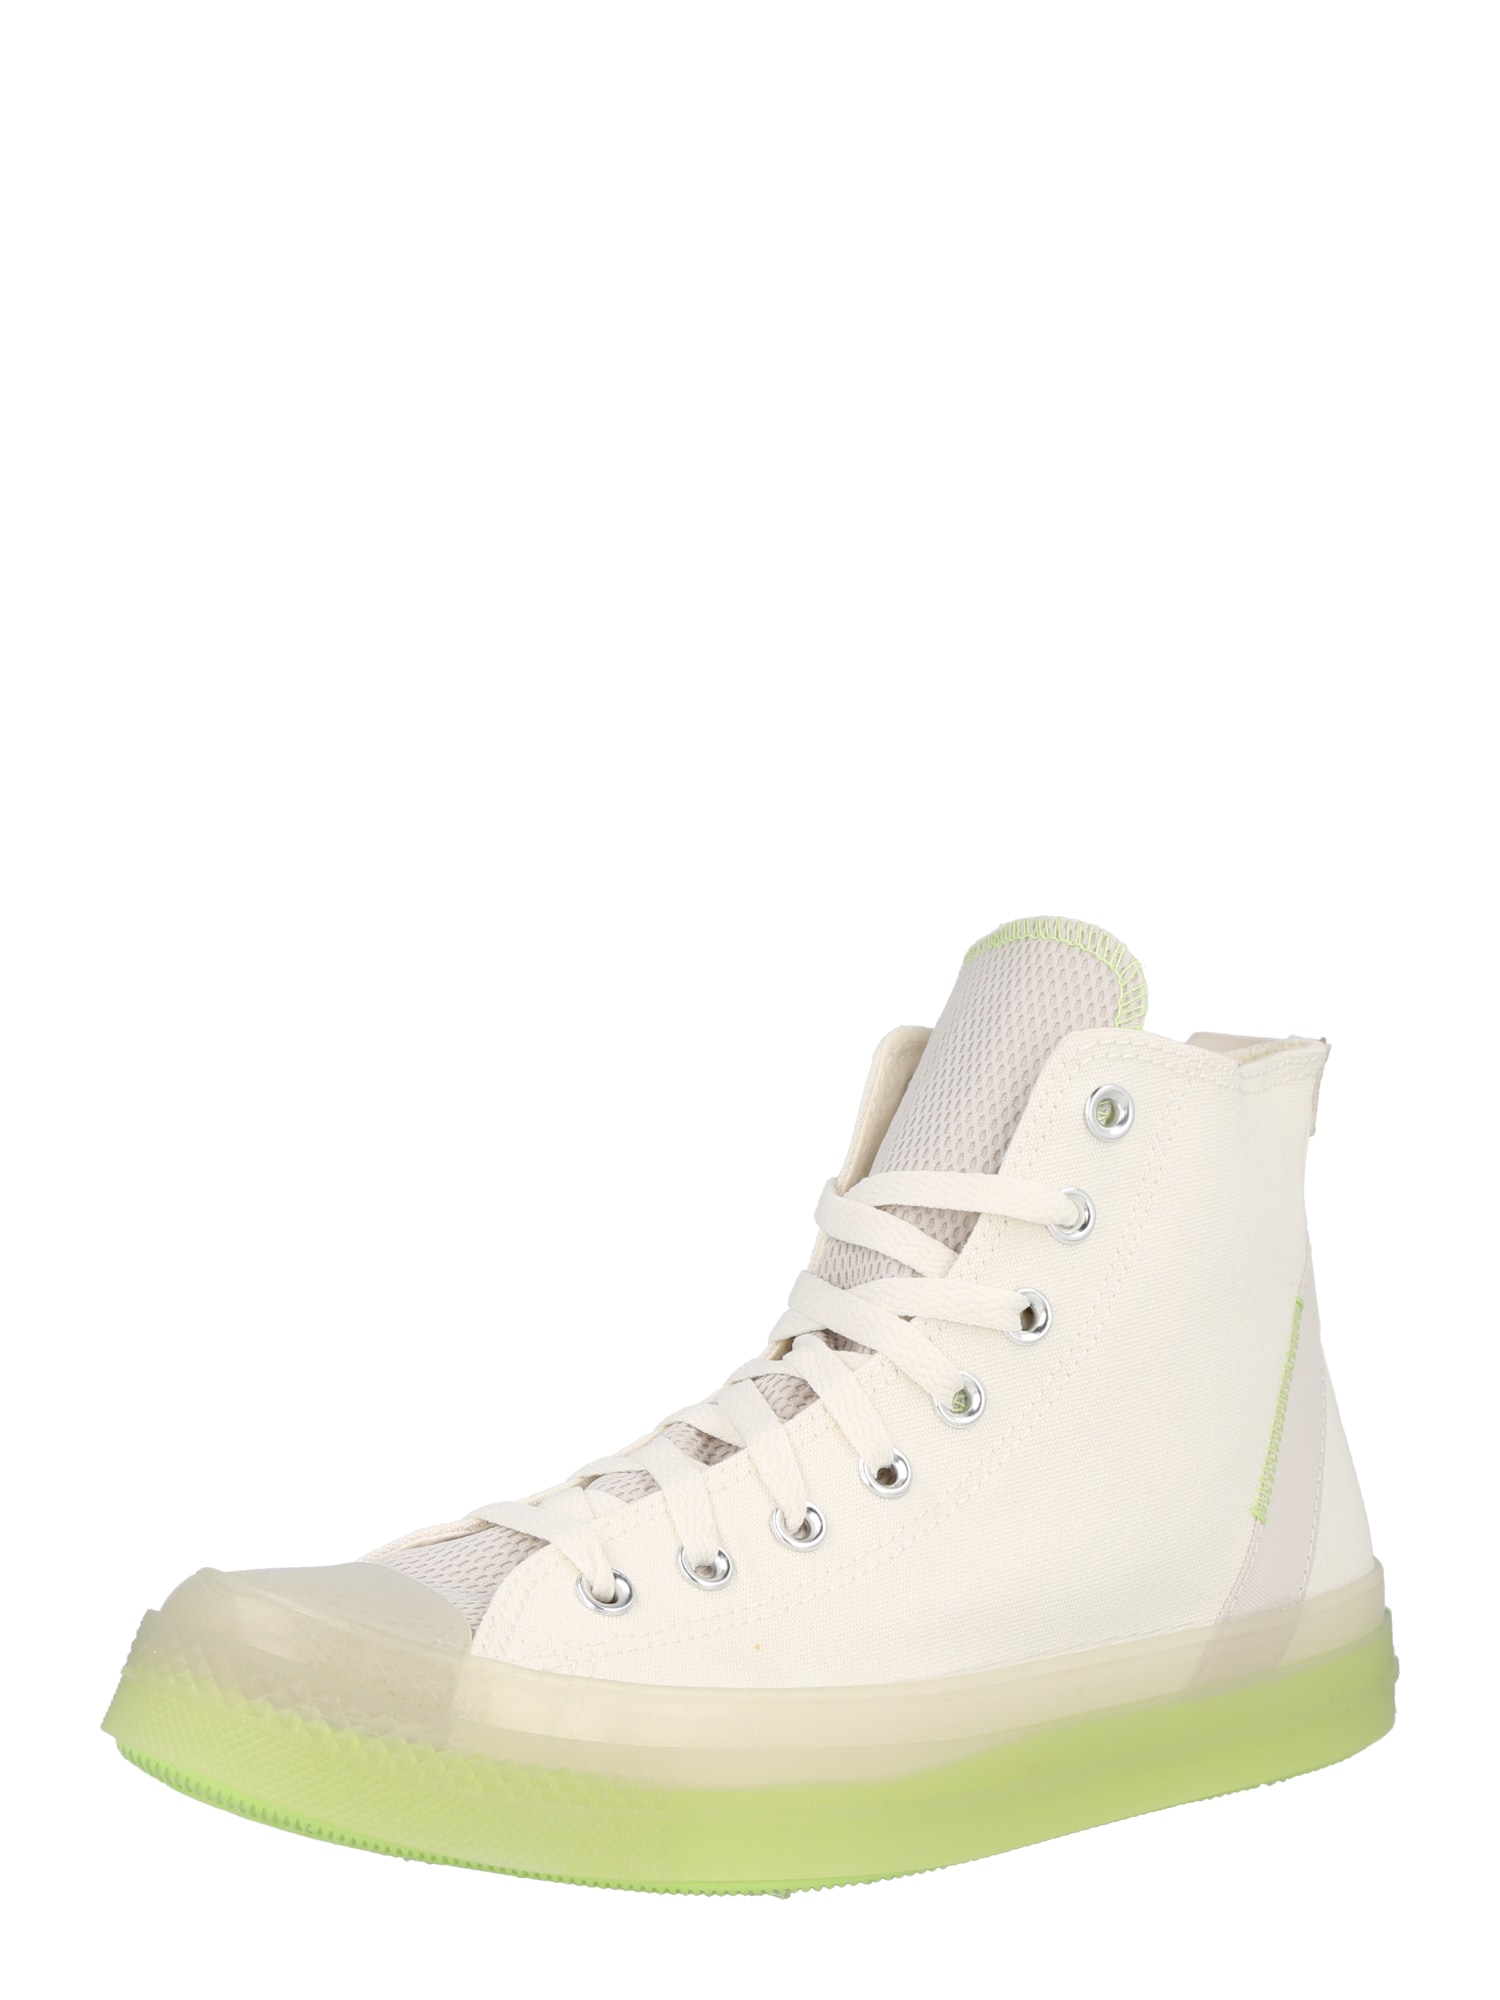 Converse CONVERSE Sneaker 'Chuck Taylor All Star CX' beige / neongrün